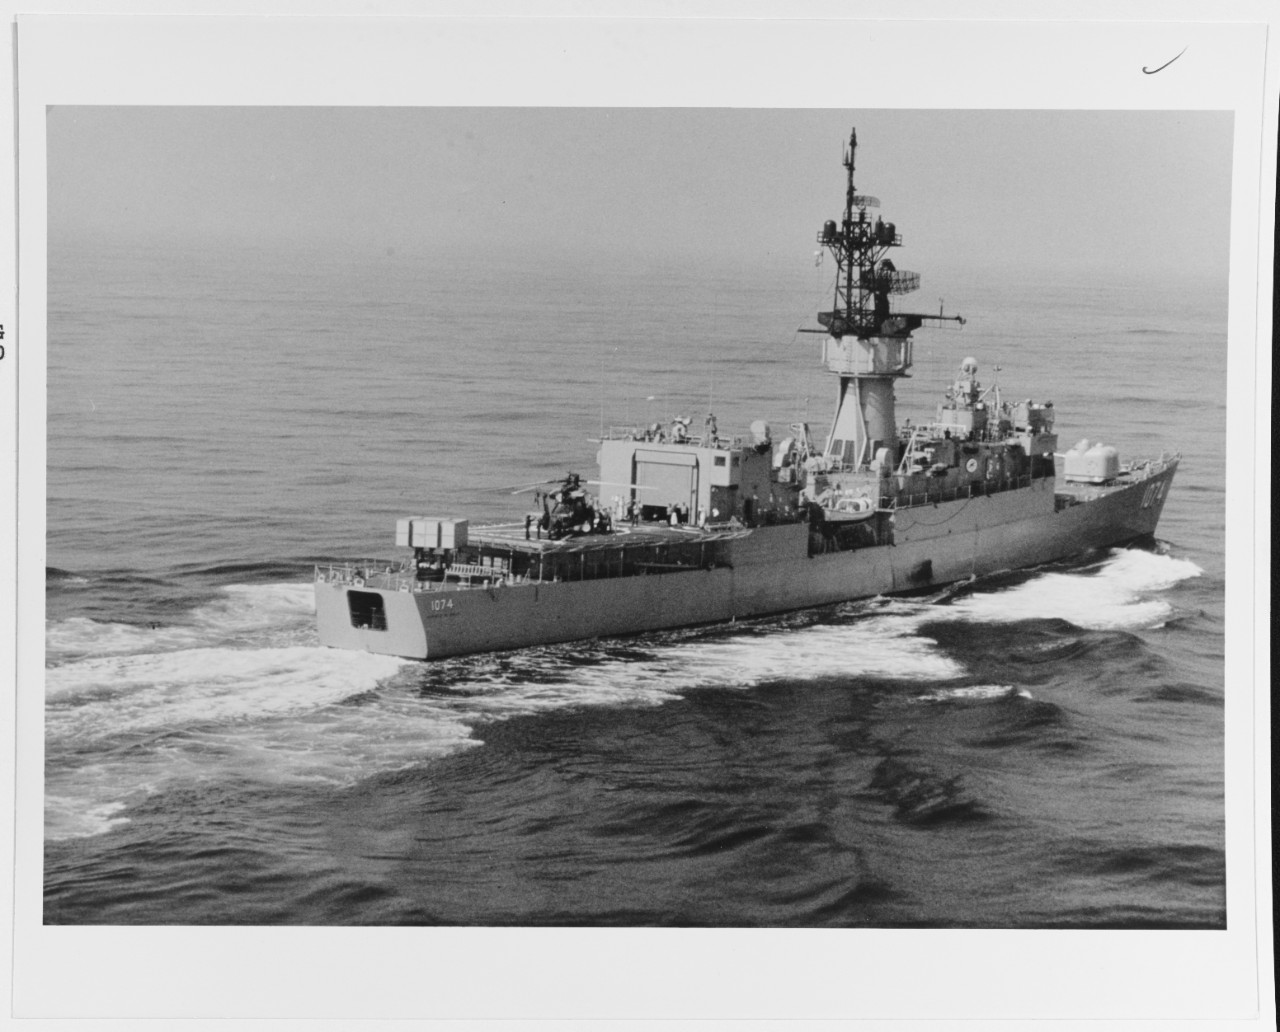 USS HAROLD E. HOLT (DE-1074)